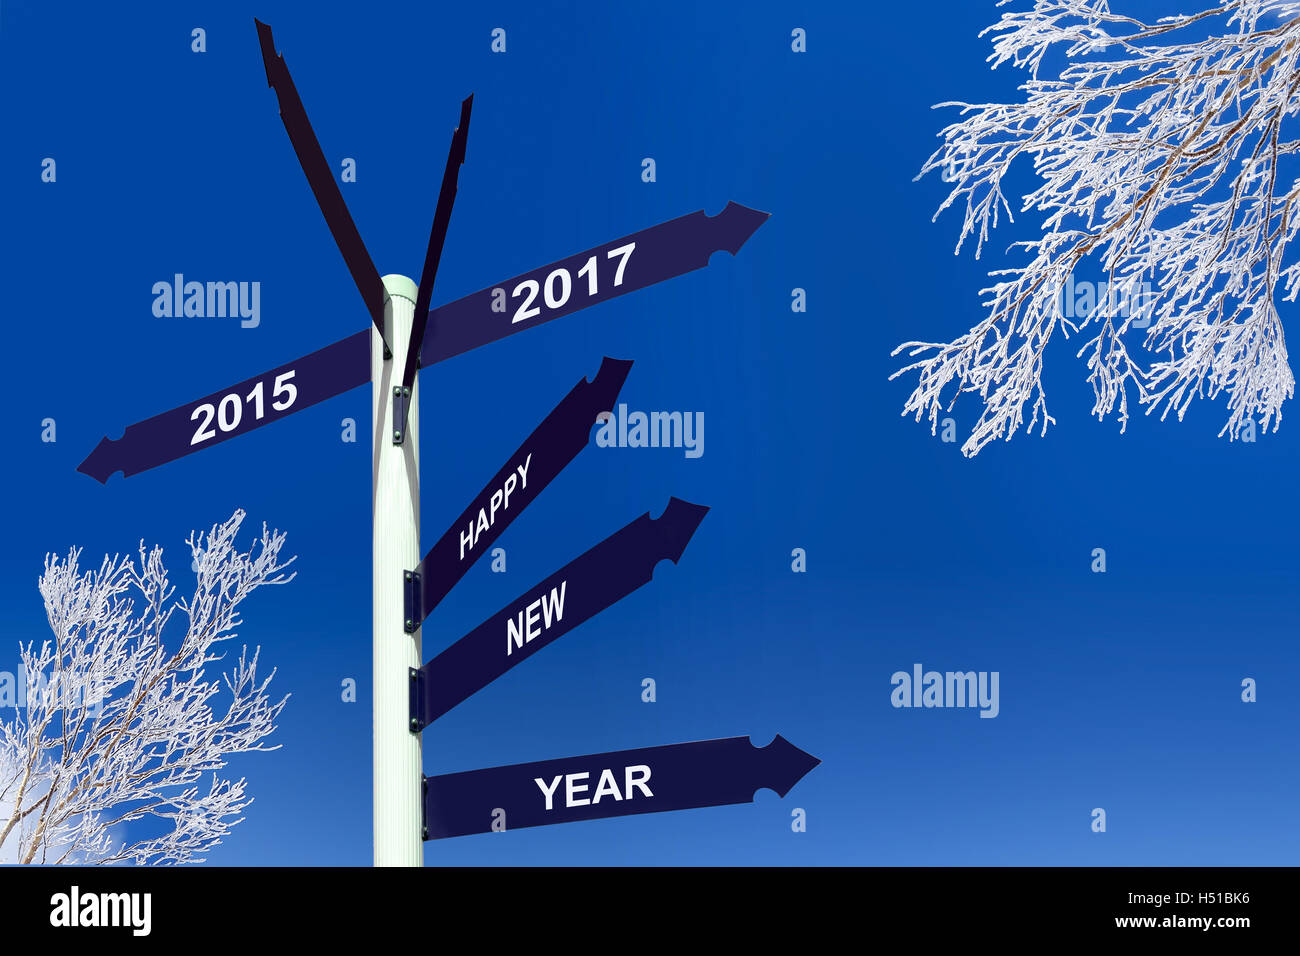 Bonne année 2017 sur les panneaux de direction, snowy trees Banque D'Images